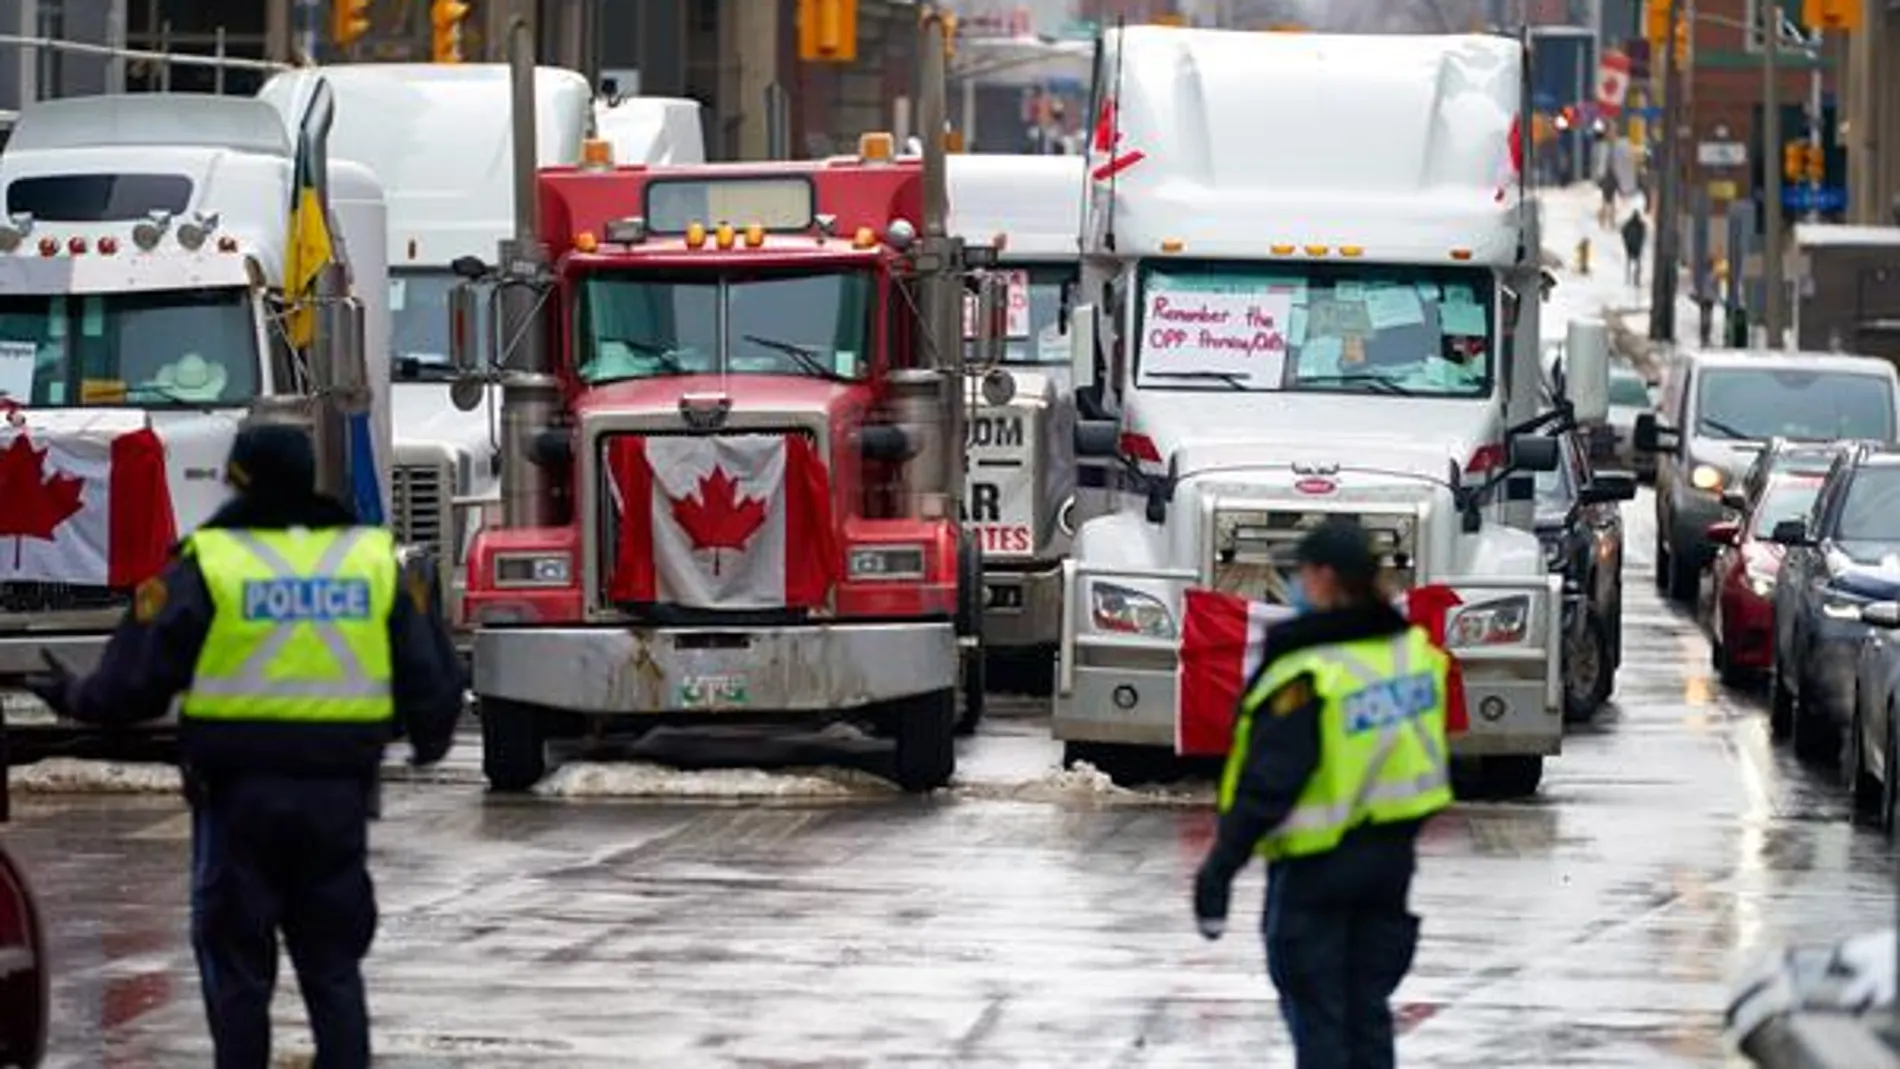 La provincia canadiense de Ontario declara el estado de emergencia por las protestas de los camioneros